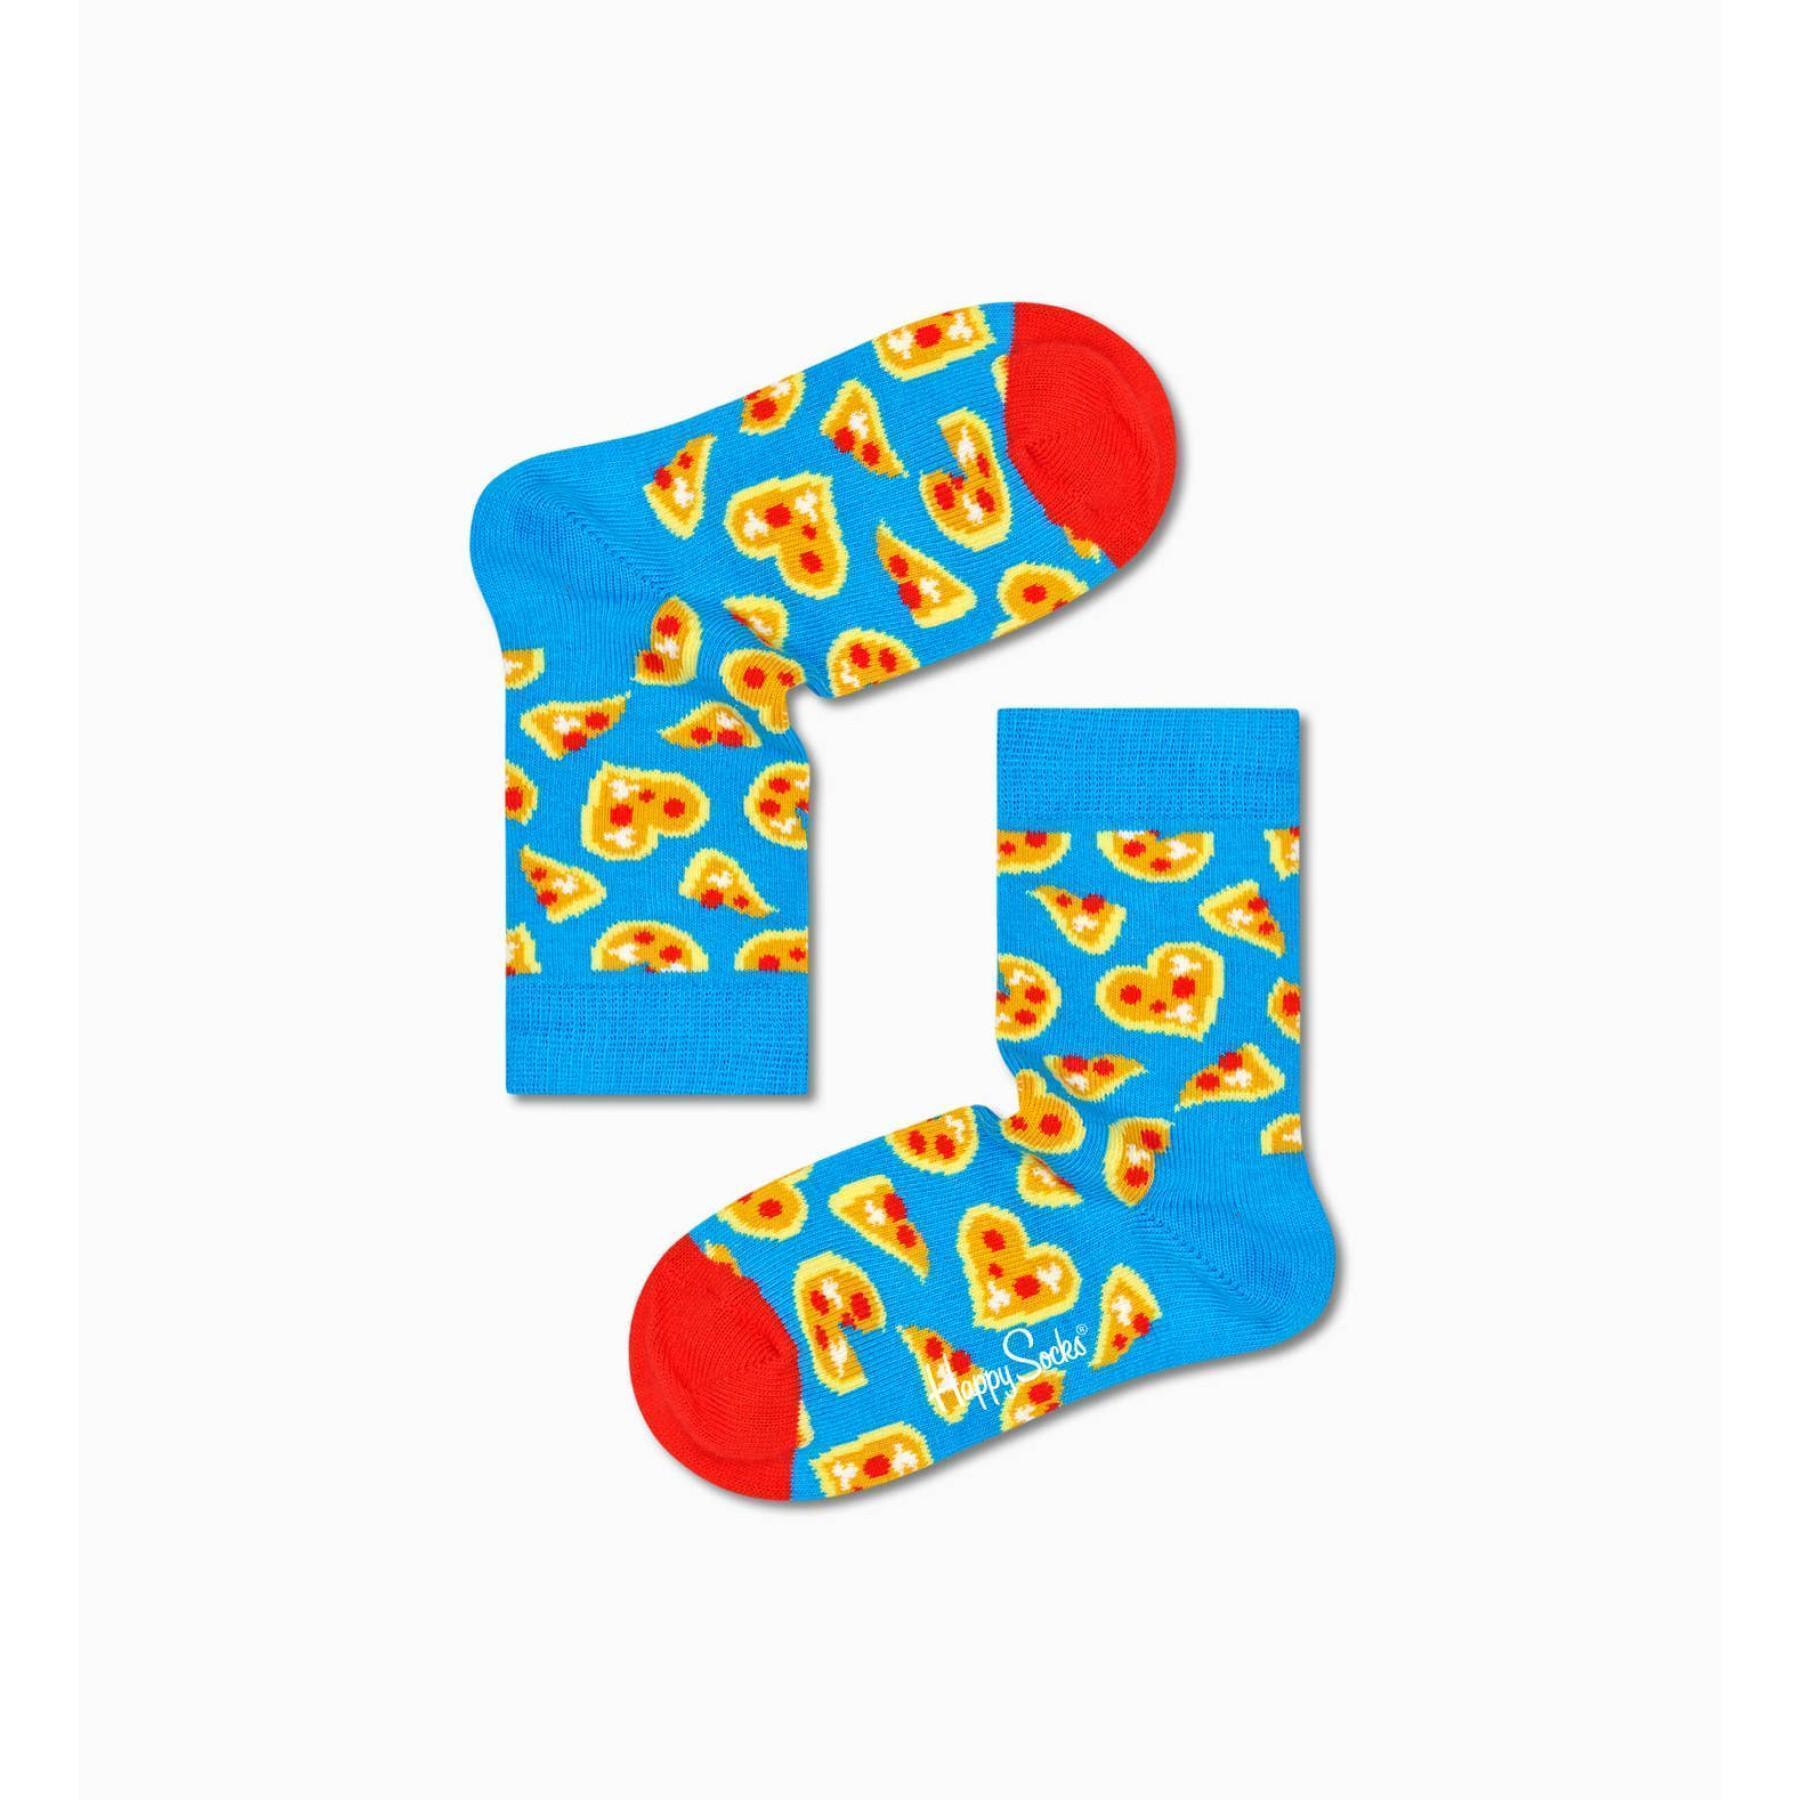 Skarpetki dla dzieci Happy socks Pizza Loves